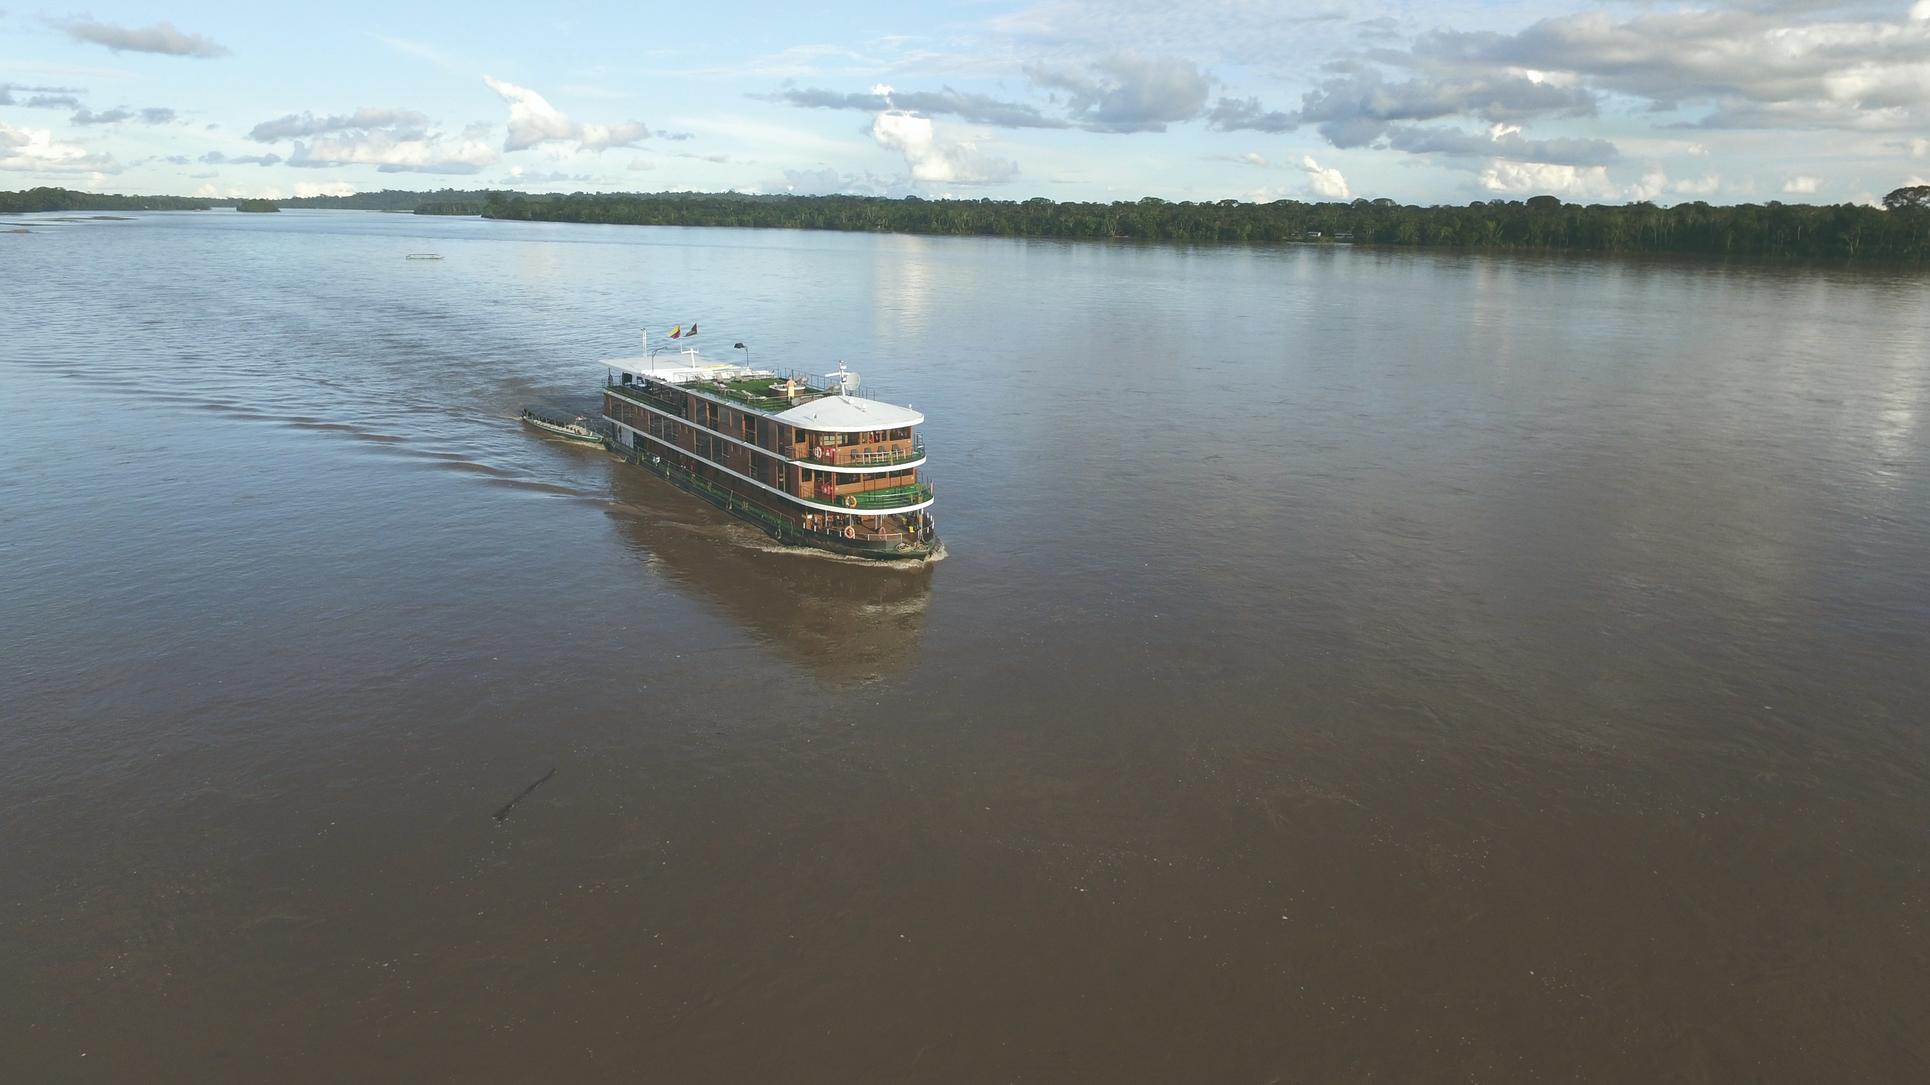 viaje lujo remoto experiencia barco Anakonda Amazonas Ecuador